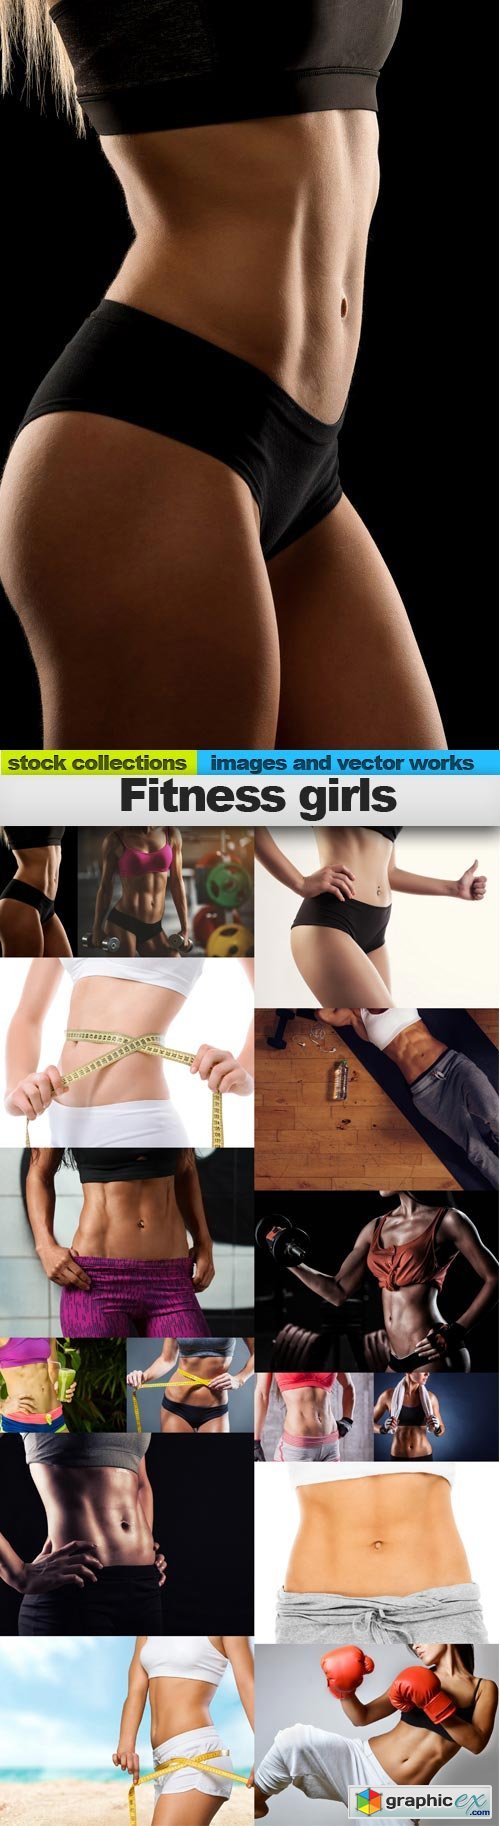 Fitness girls, 15 x UHQ JPEG